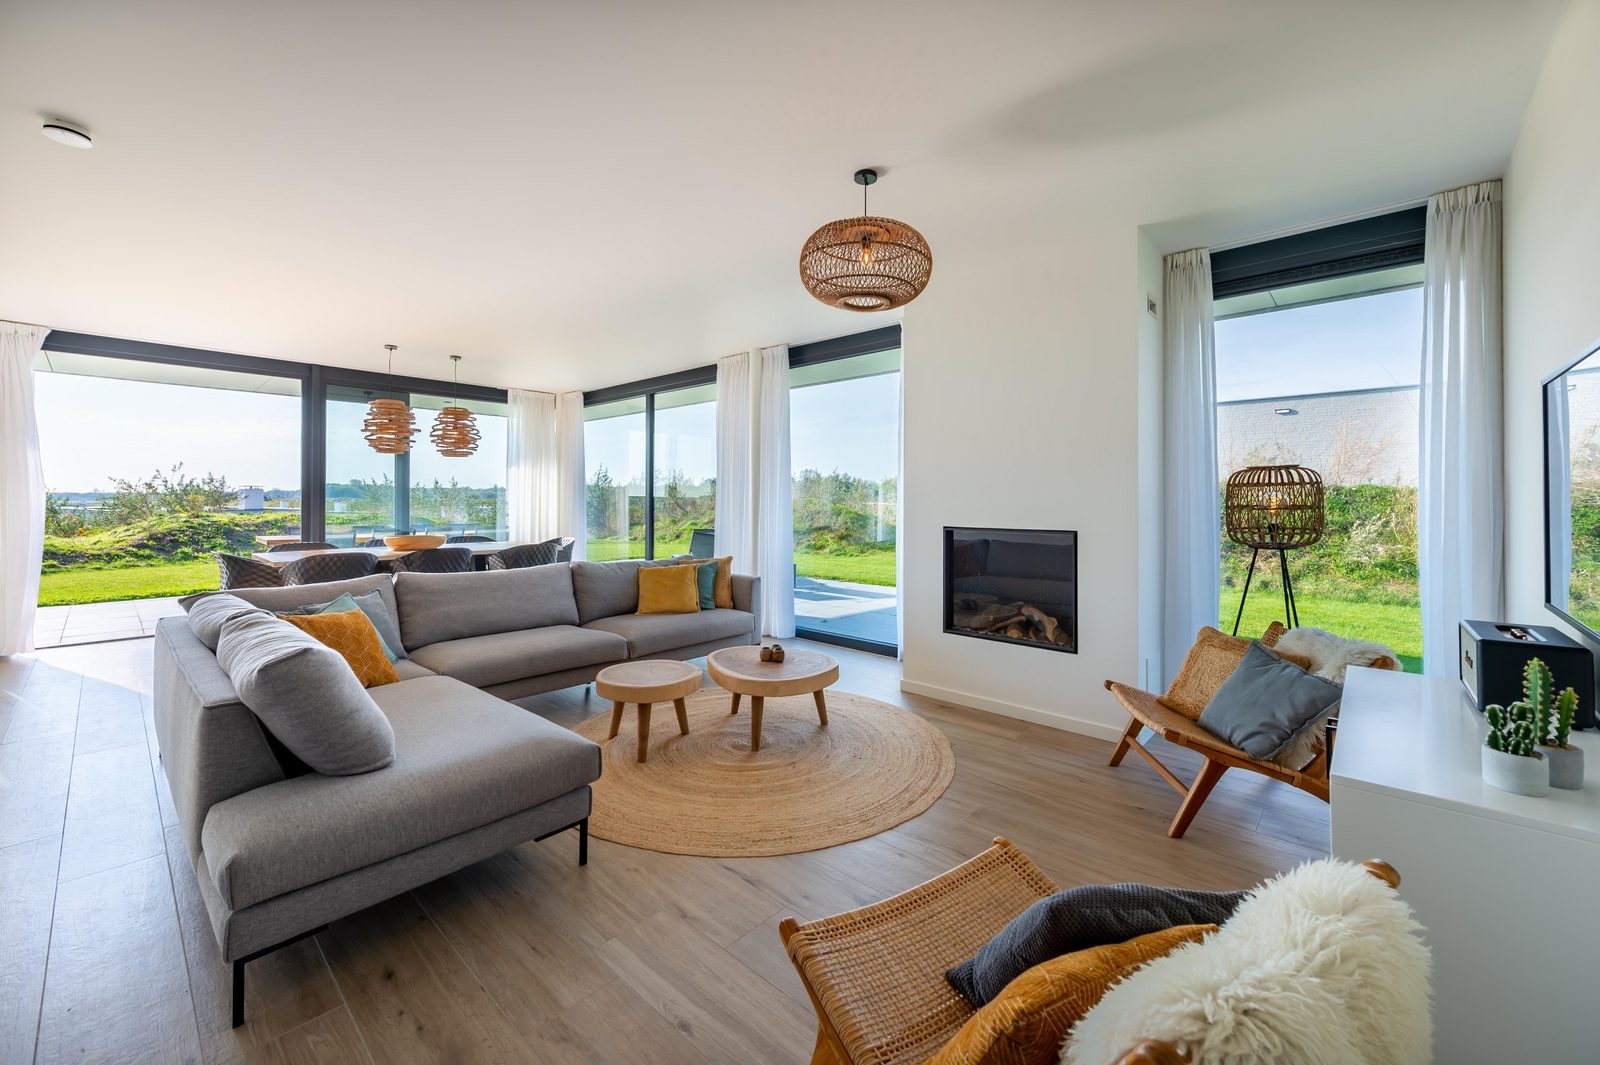 Luxus Ferienvilla am Meer in Zeeland für 8 personen